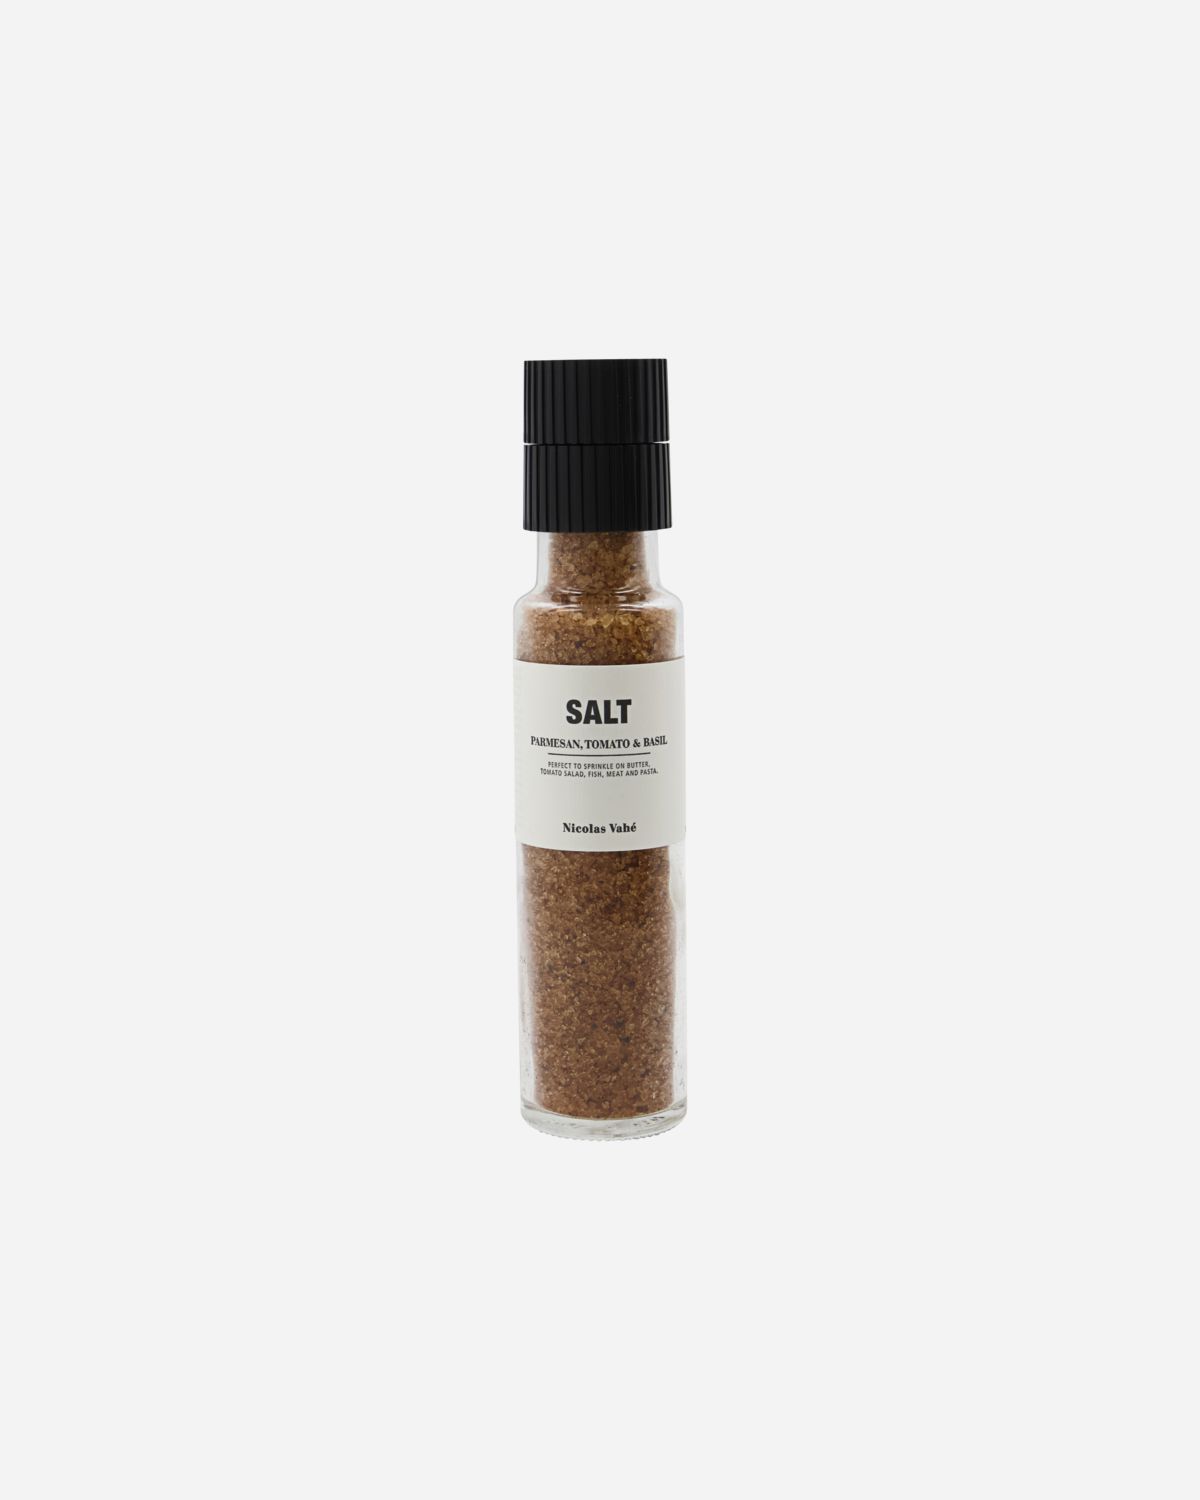 Salt, Parmesan, Tomato & Basil, 300 g.